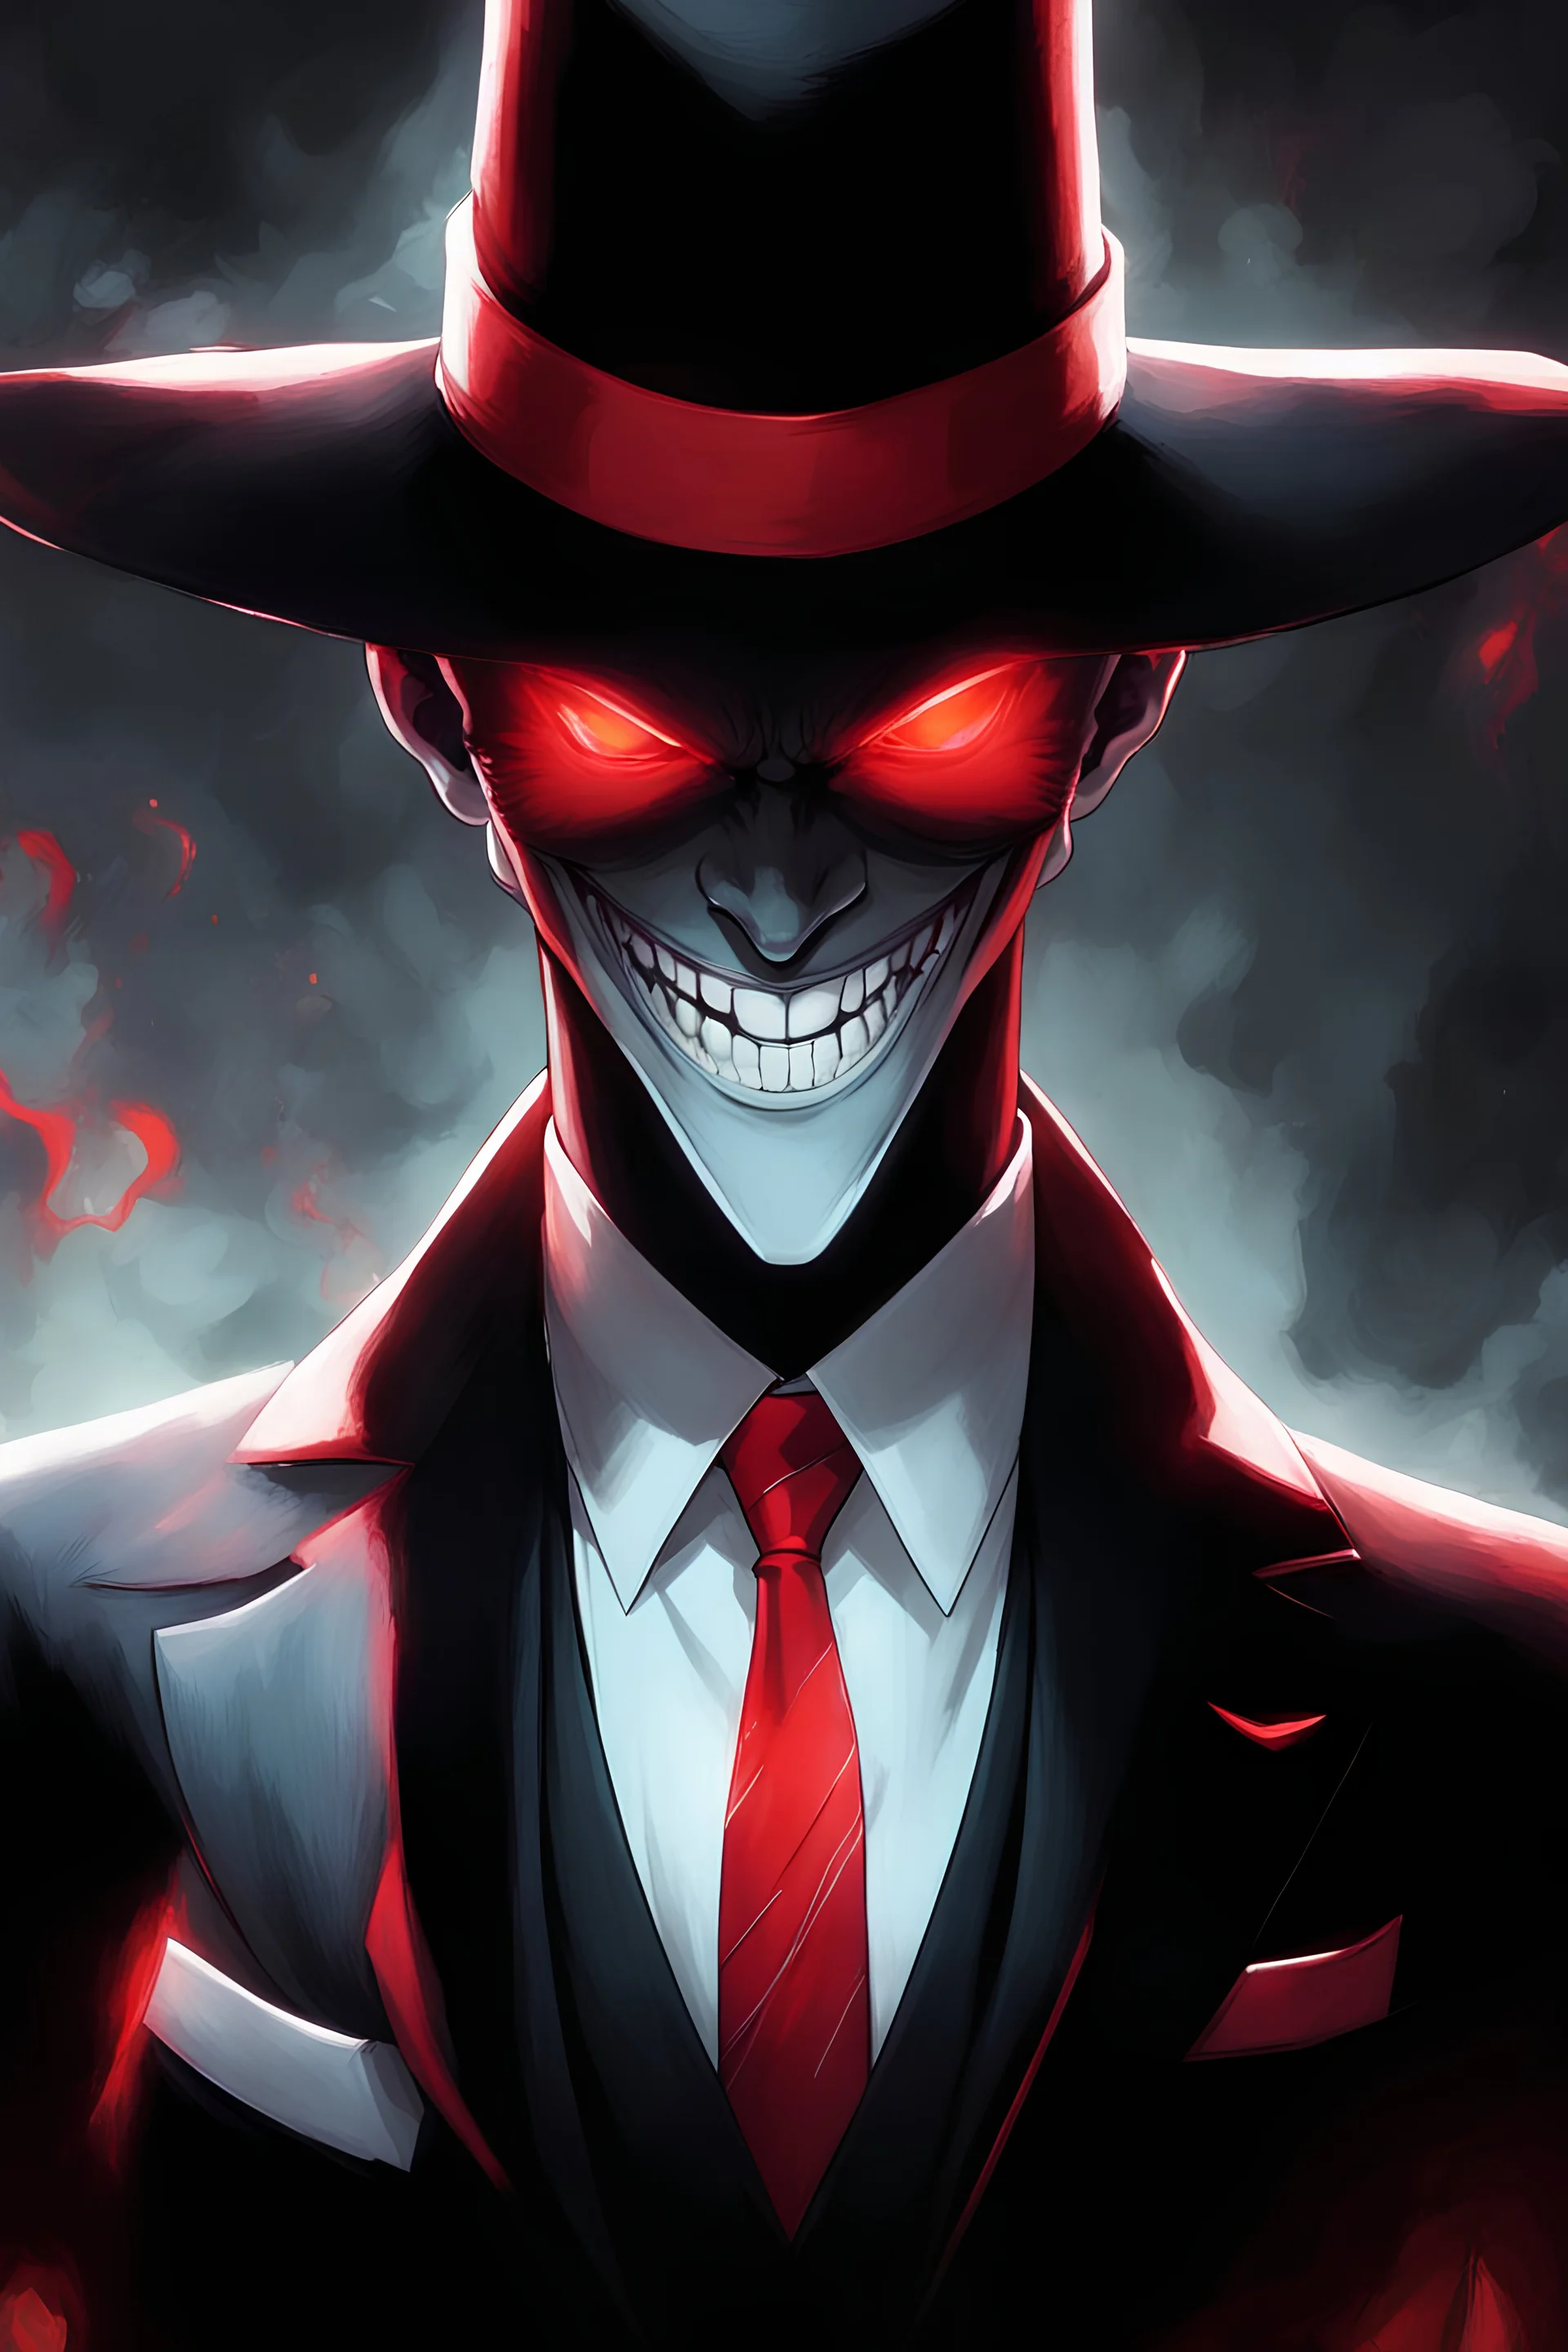 demonio de sombras usando sombrero y traje negro, con detalle y corbata de rojo. Rojos rojos brillantes y una gran sonrisa blanca